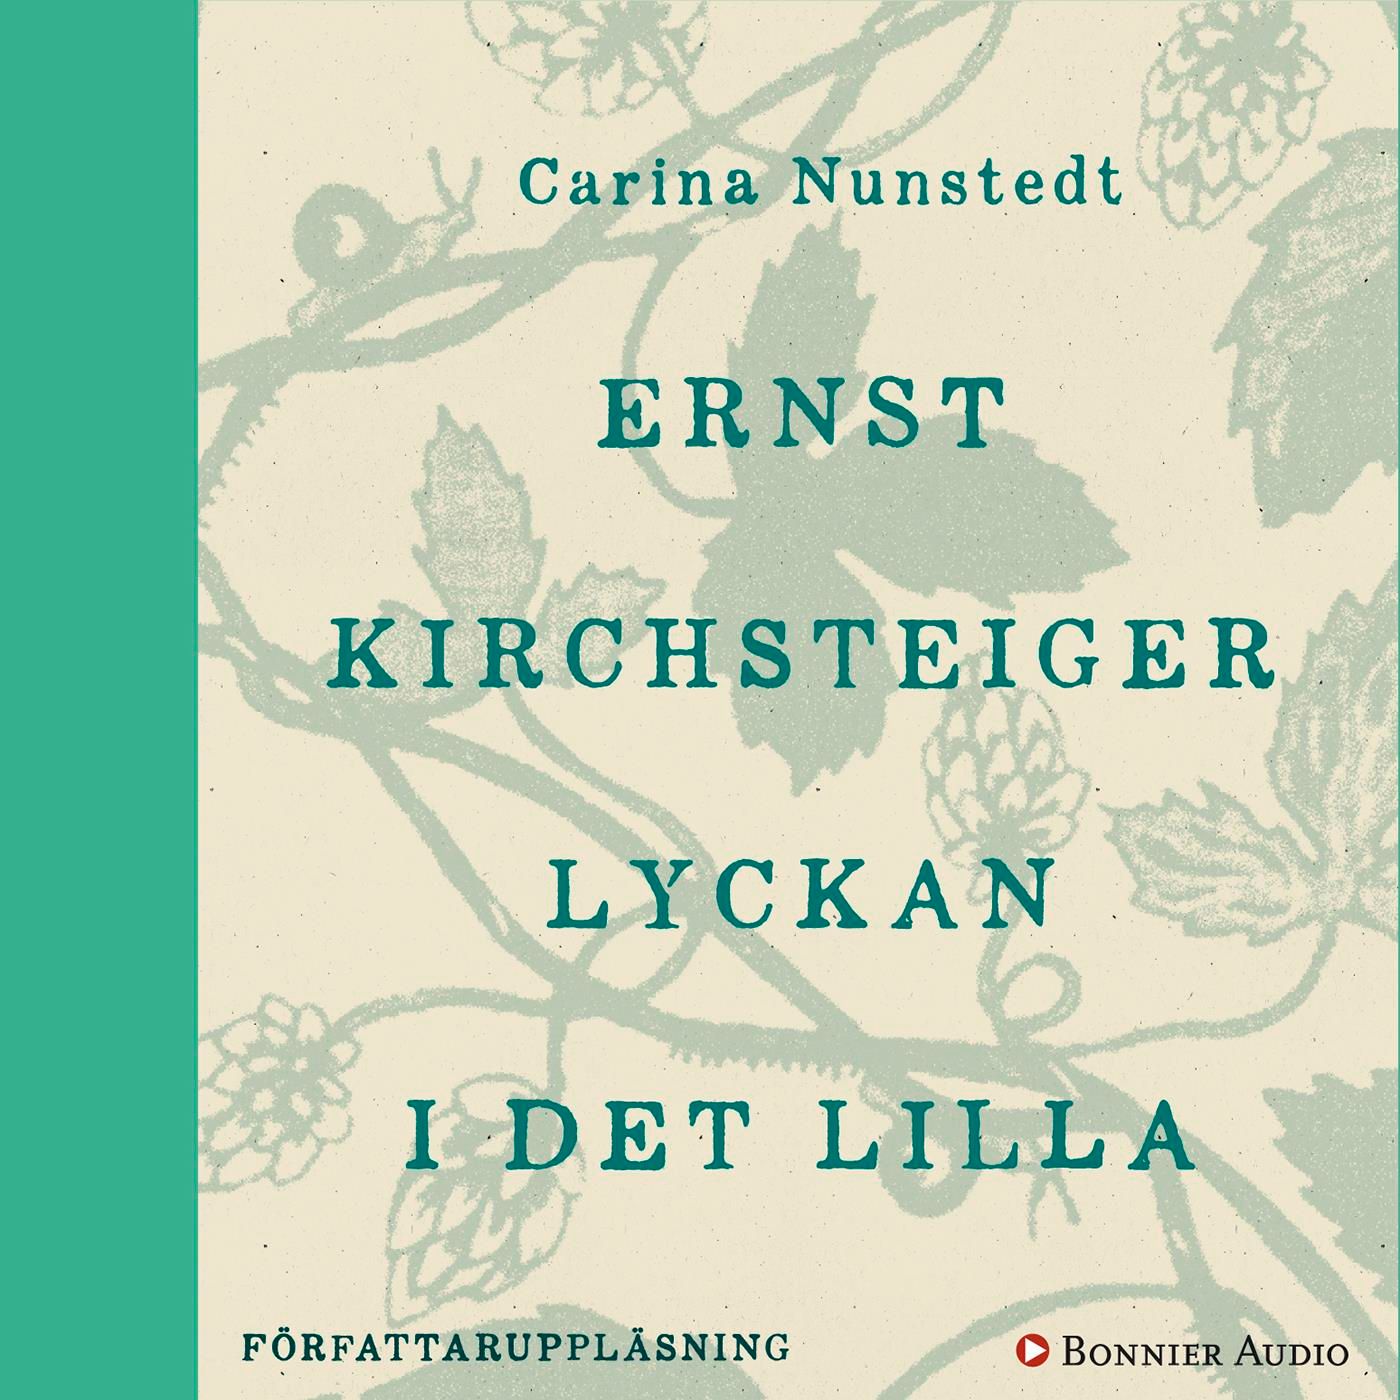 Lyckan i det lilla, ljudbok av Ernst Kirchsteiger, Carina Nunstedt